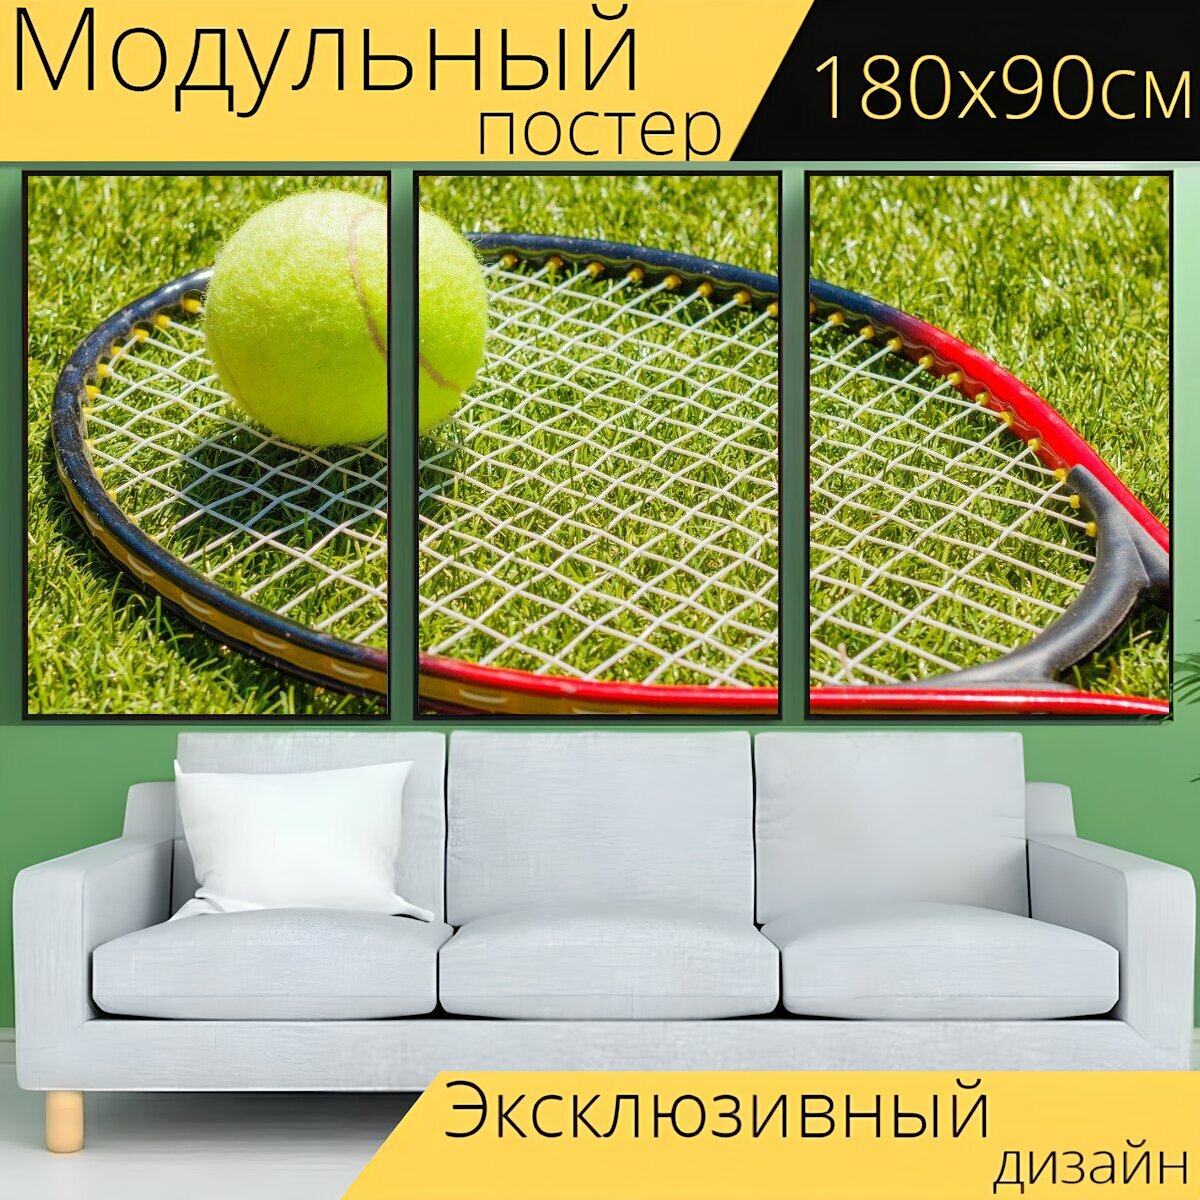 Модульный постер "Большой теннис, теннисные ракетки, теннисный мяч" 180 x 90 см. для интерьера